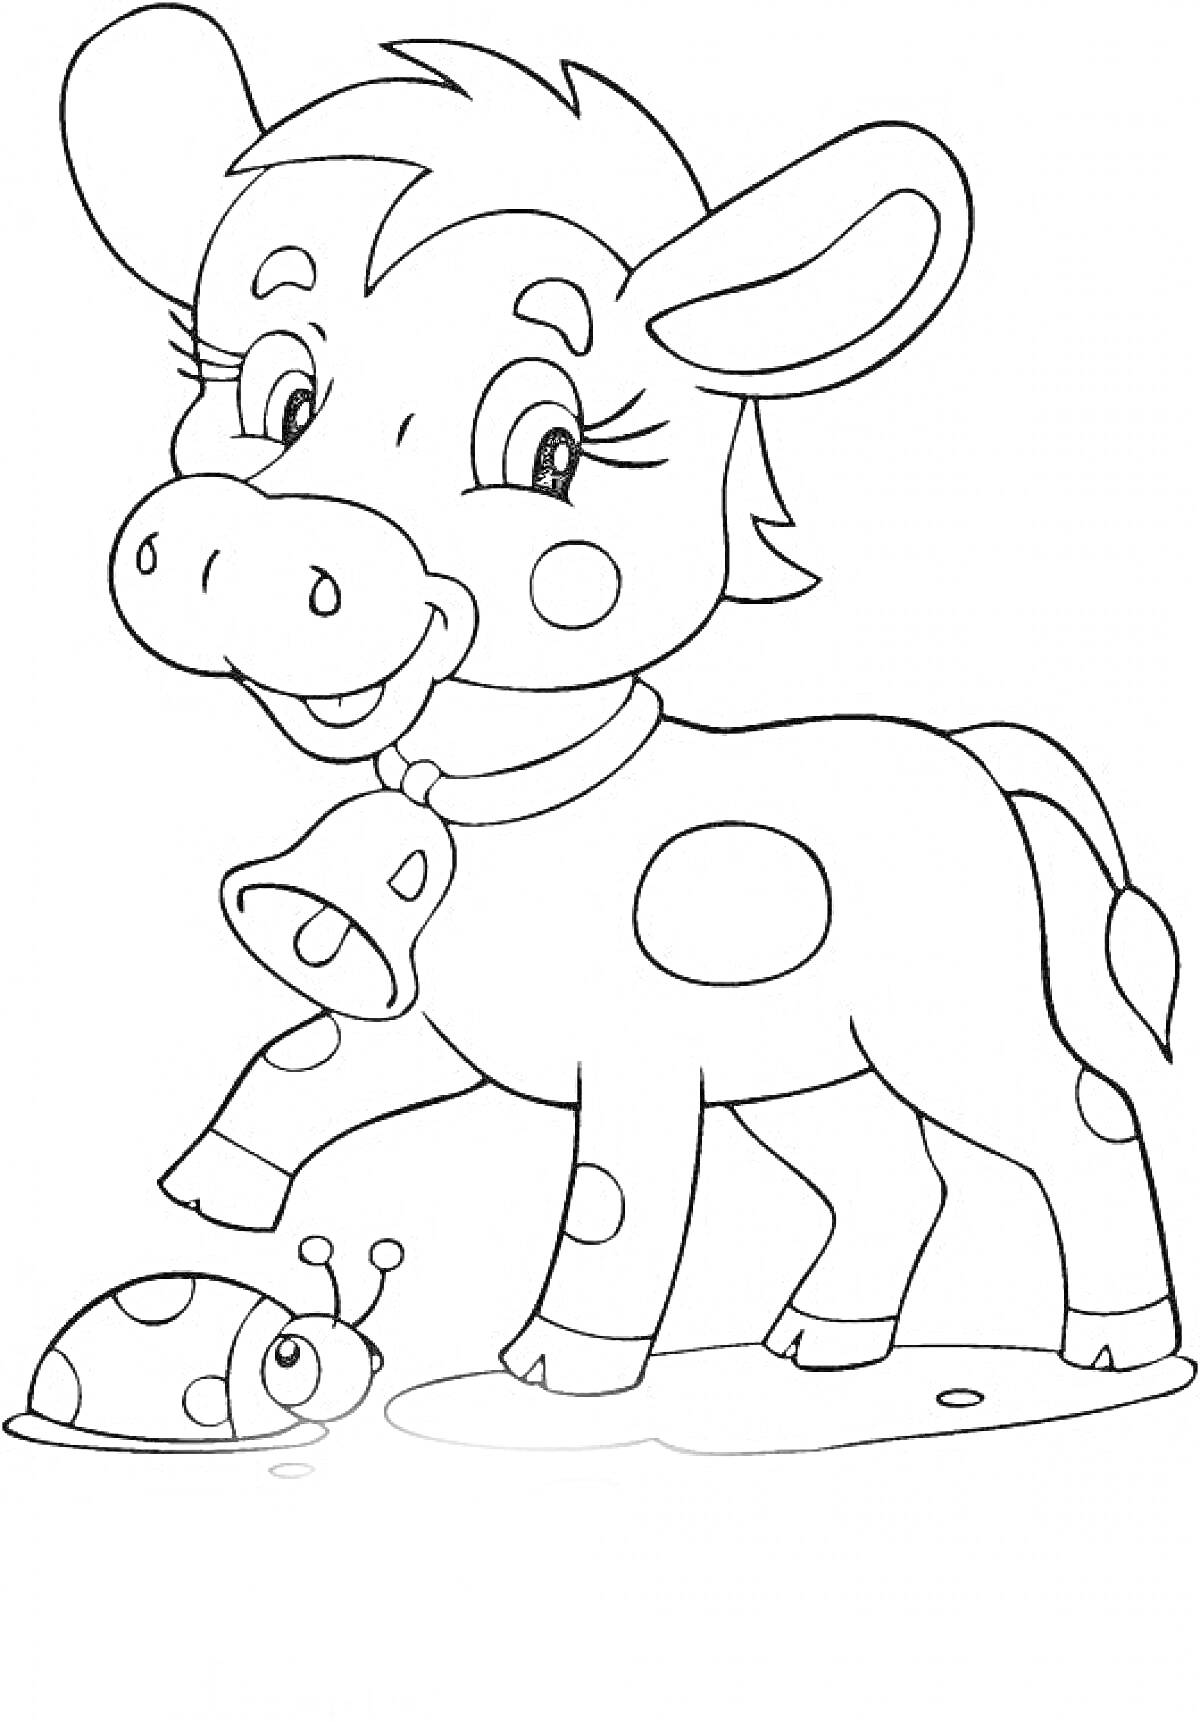 Раскраска Теленок с ошейником и божьей коровкой